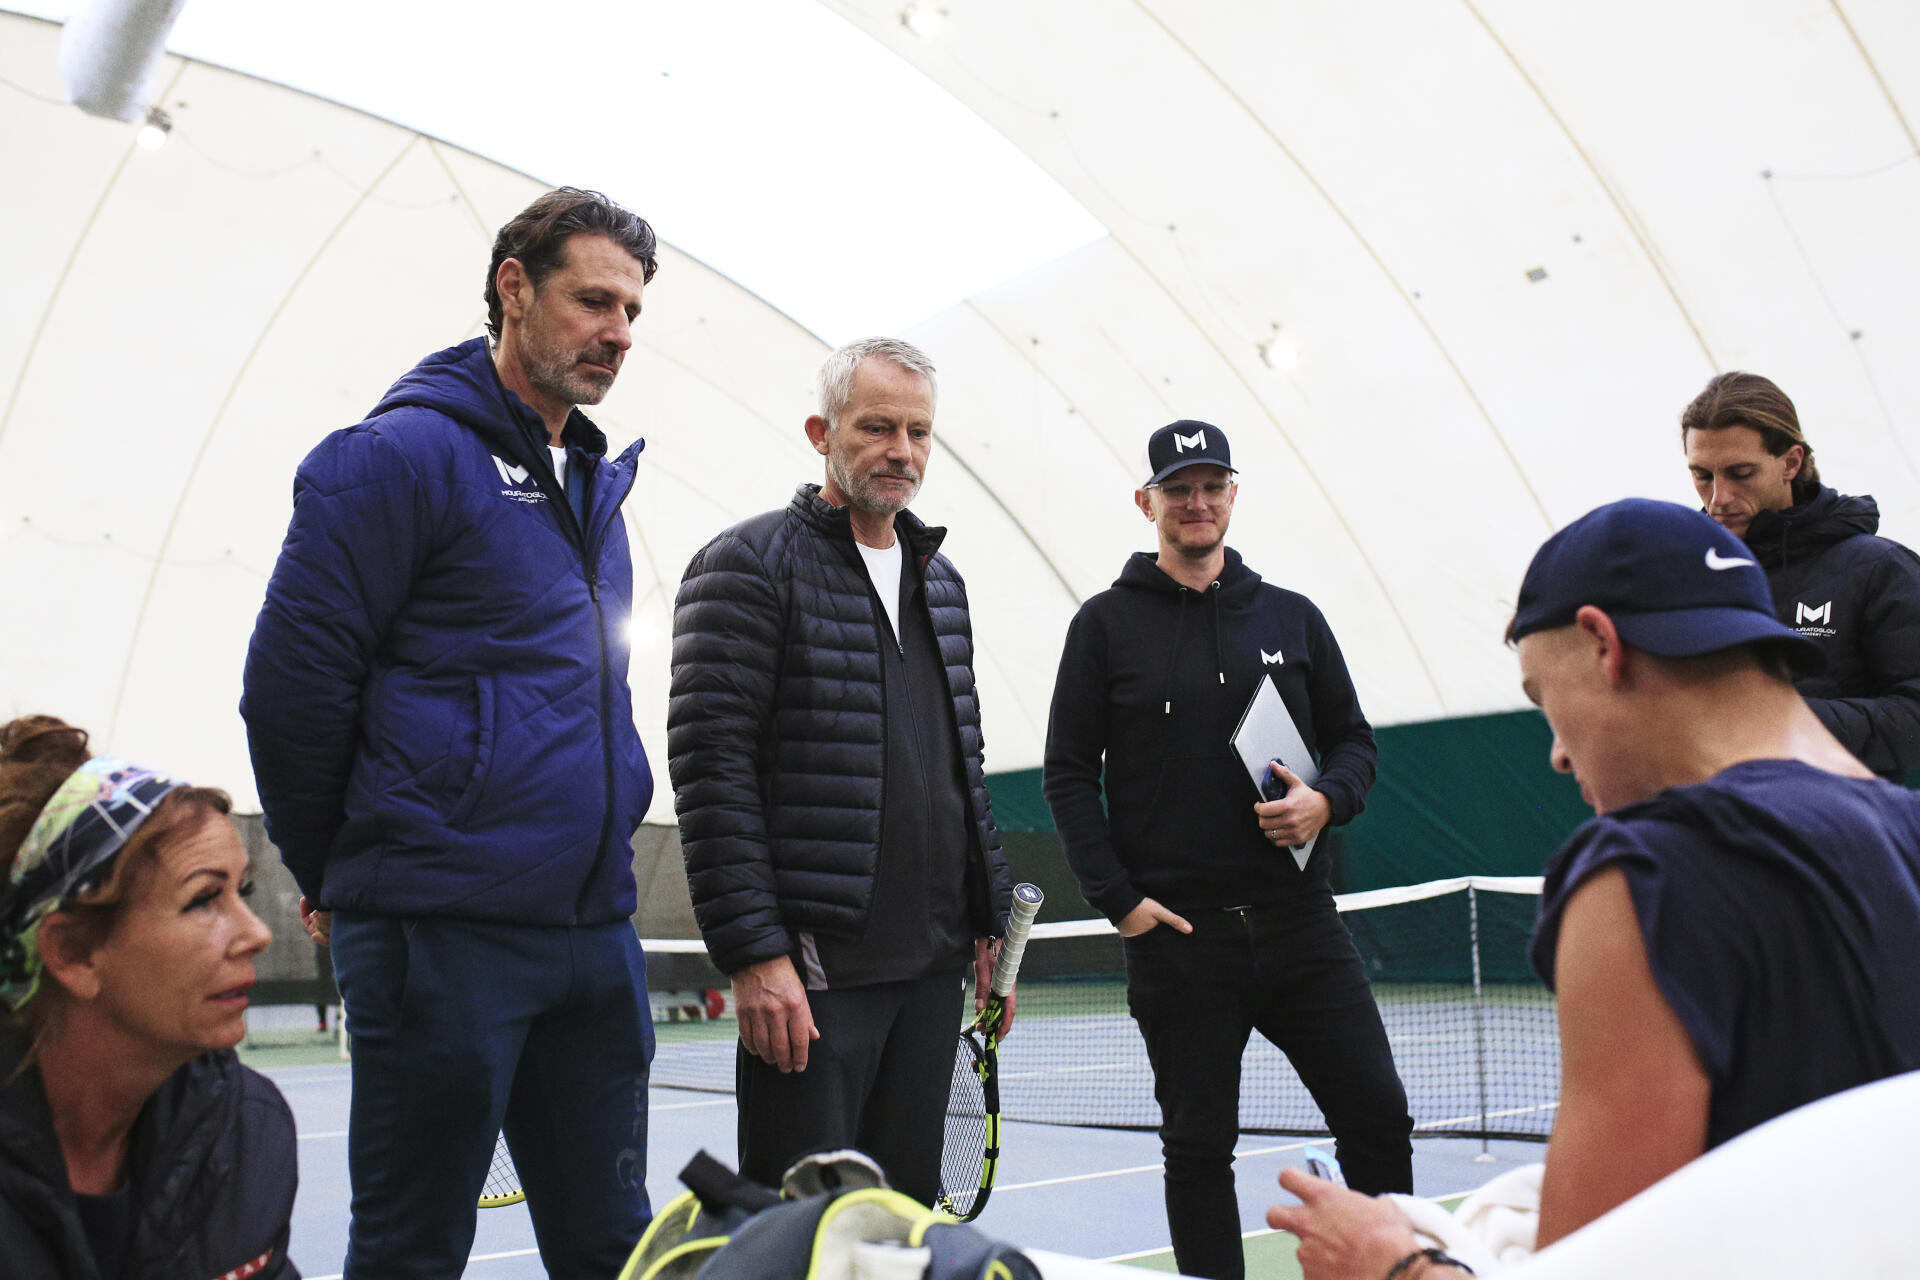 Holger Rune en un entrenamiento en la Mouratoglou Tennis Academy, en Biot (Alpes-Maritimes), el 8 de diciembre de 2022. De izquierda a derecha: Aneke Rune, Patrick Mouratoglou, su entrenador, Lars Christensen, su histórico entrenador, Mike James, analista de datos , y Lapo Becherini, preparador físico.